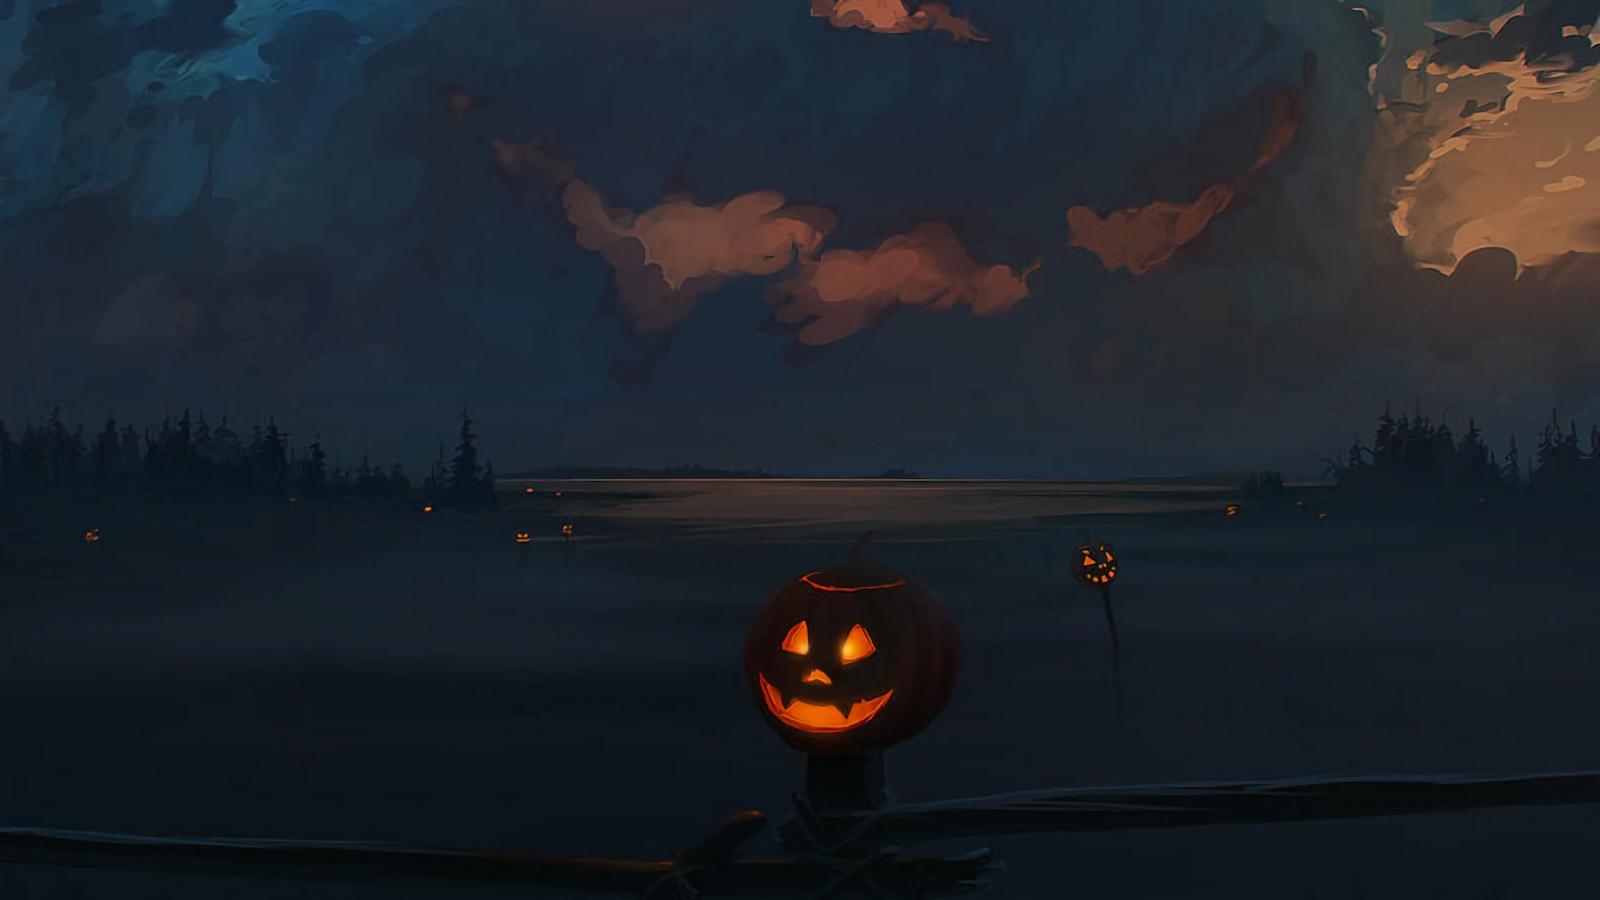 Download wallpaper 1600x900 jack o lantern, pumpkin